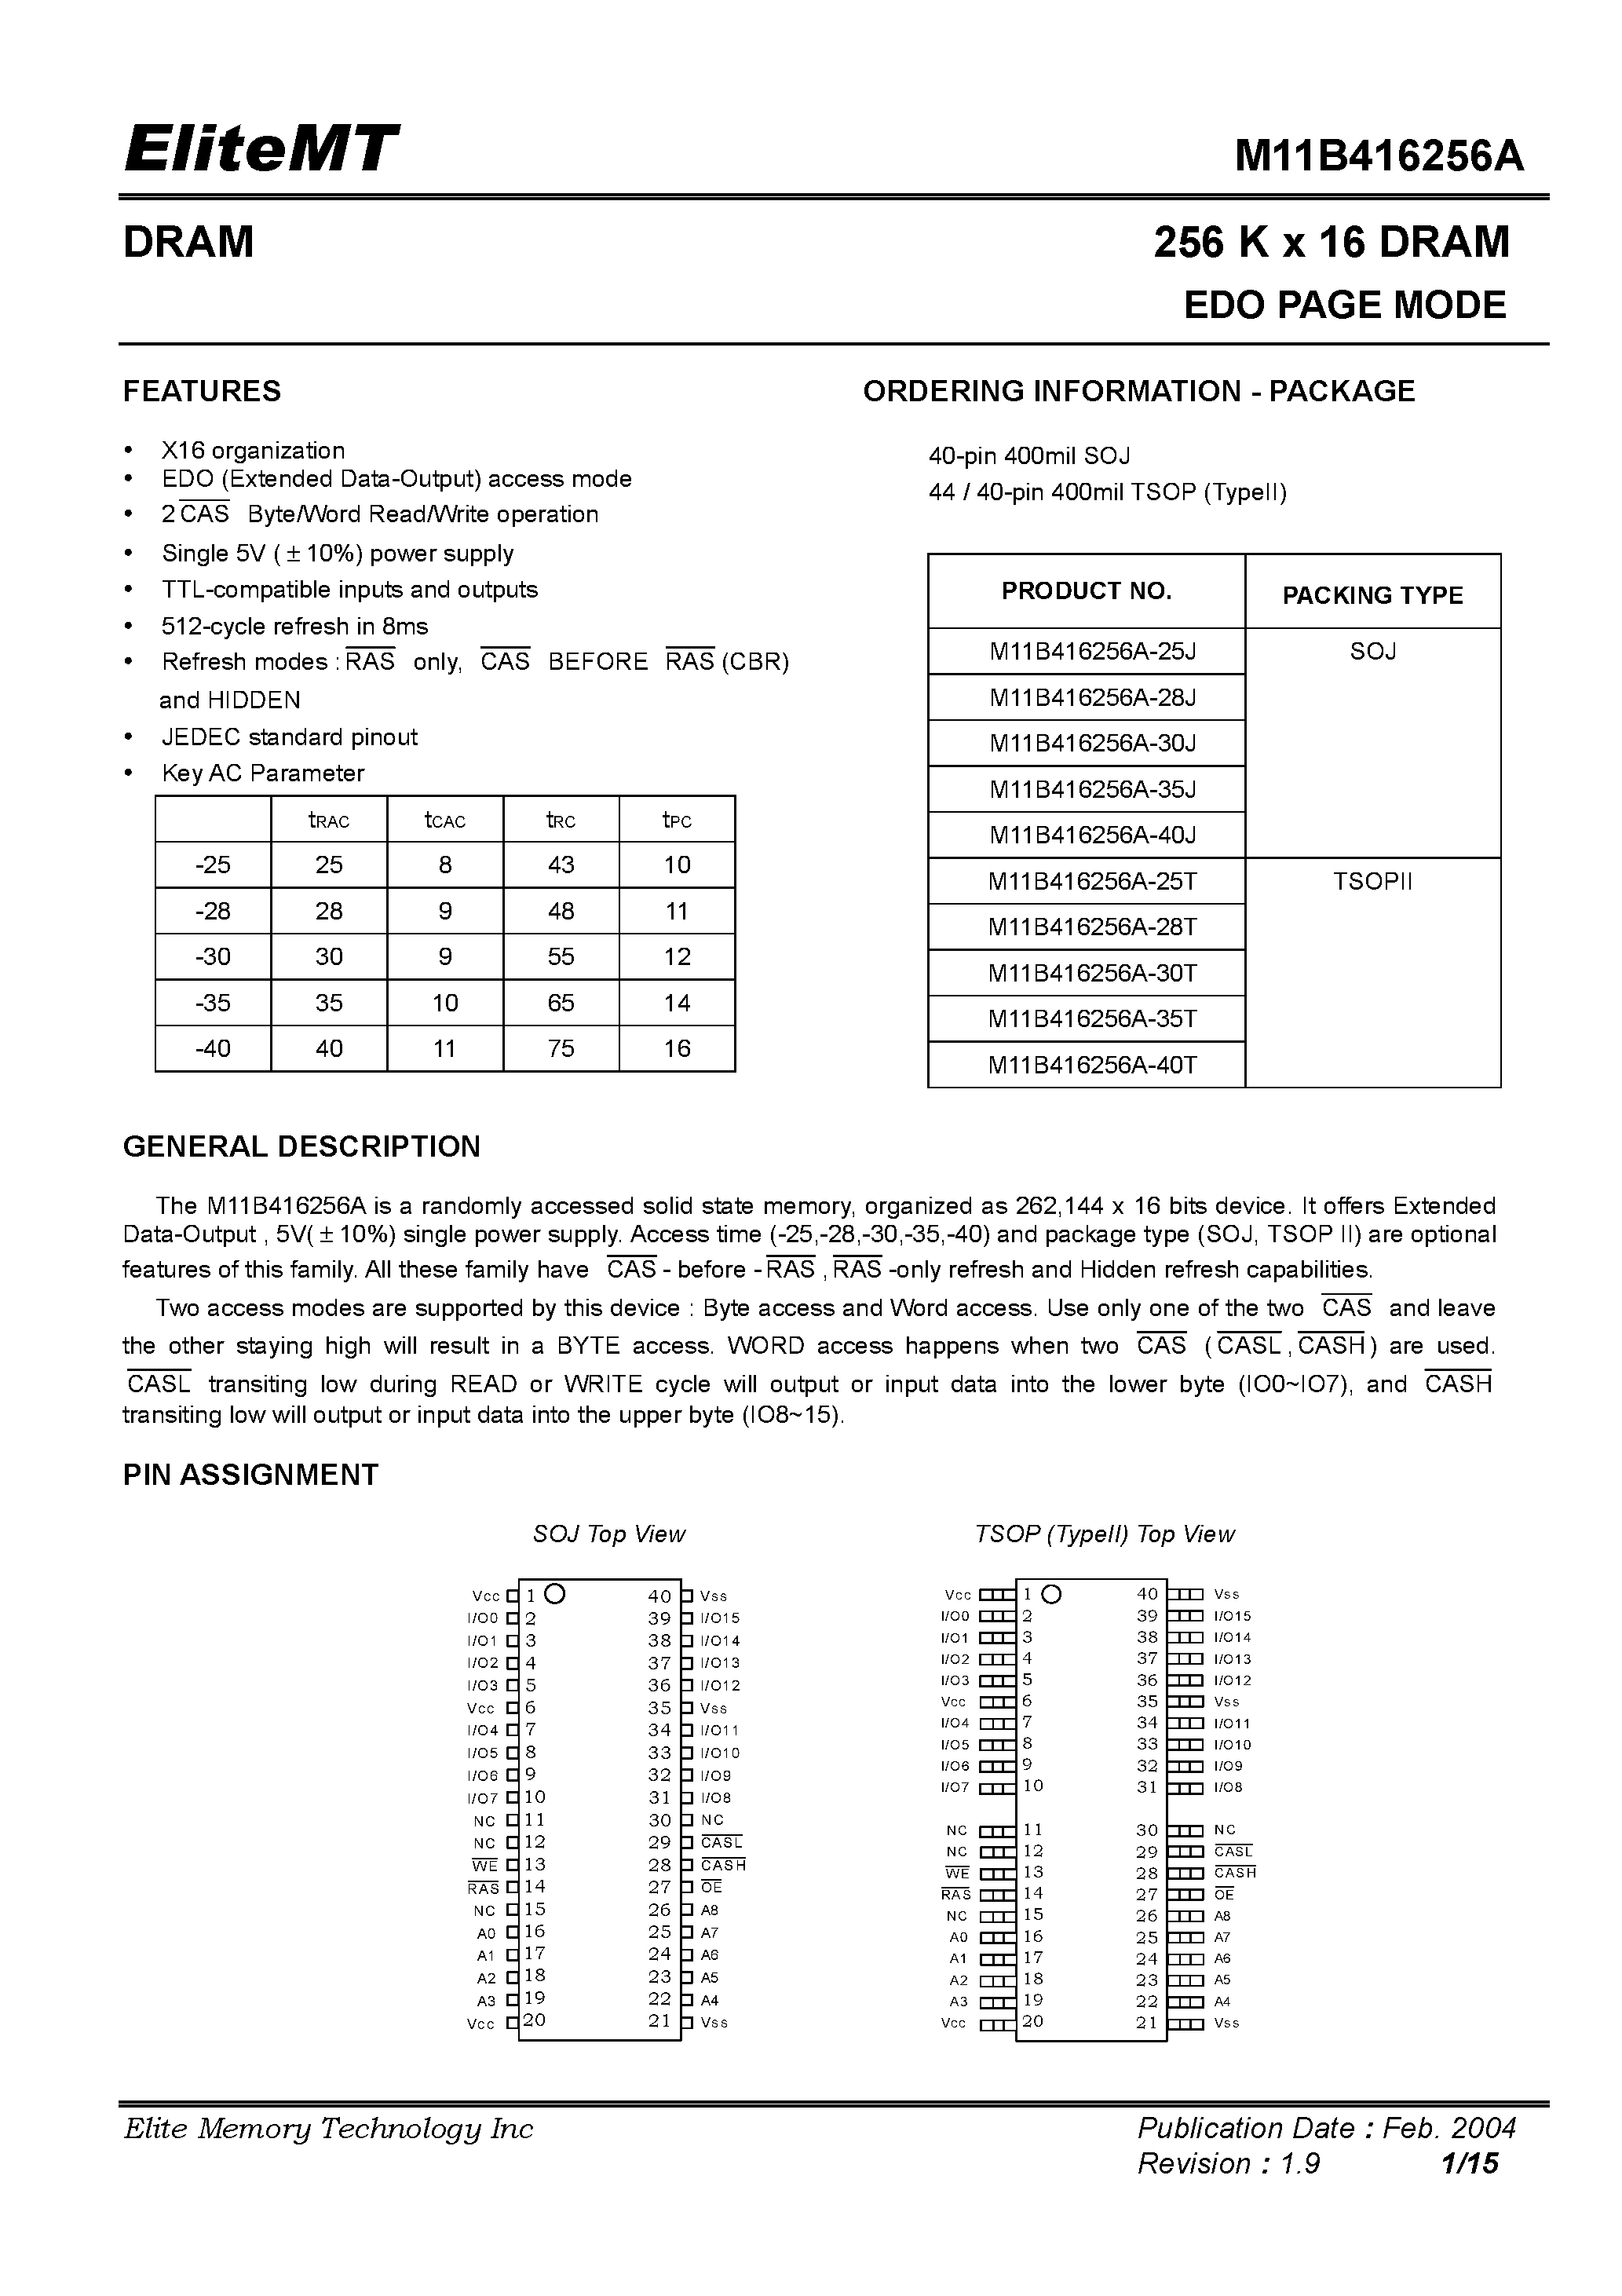 Datasheet M11B416256A-28T - 256 K x 16 DRAM EDO PAGE MODE page 1